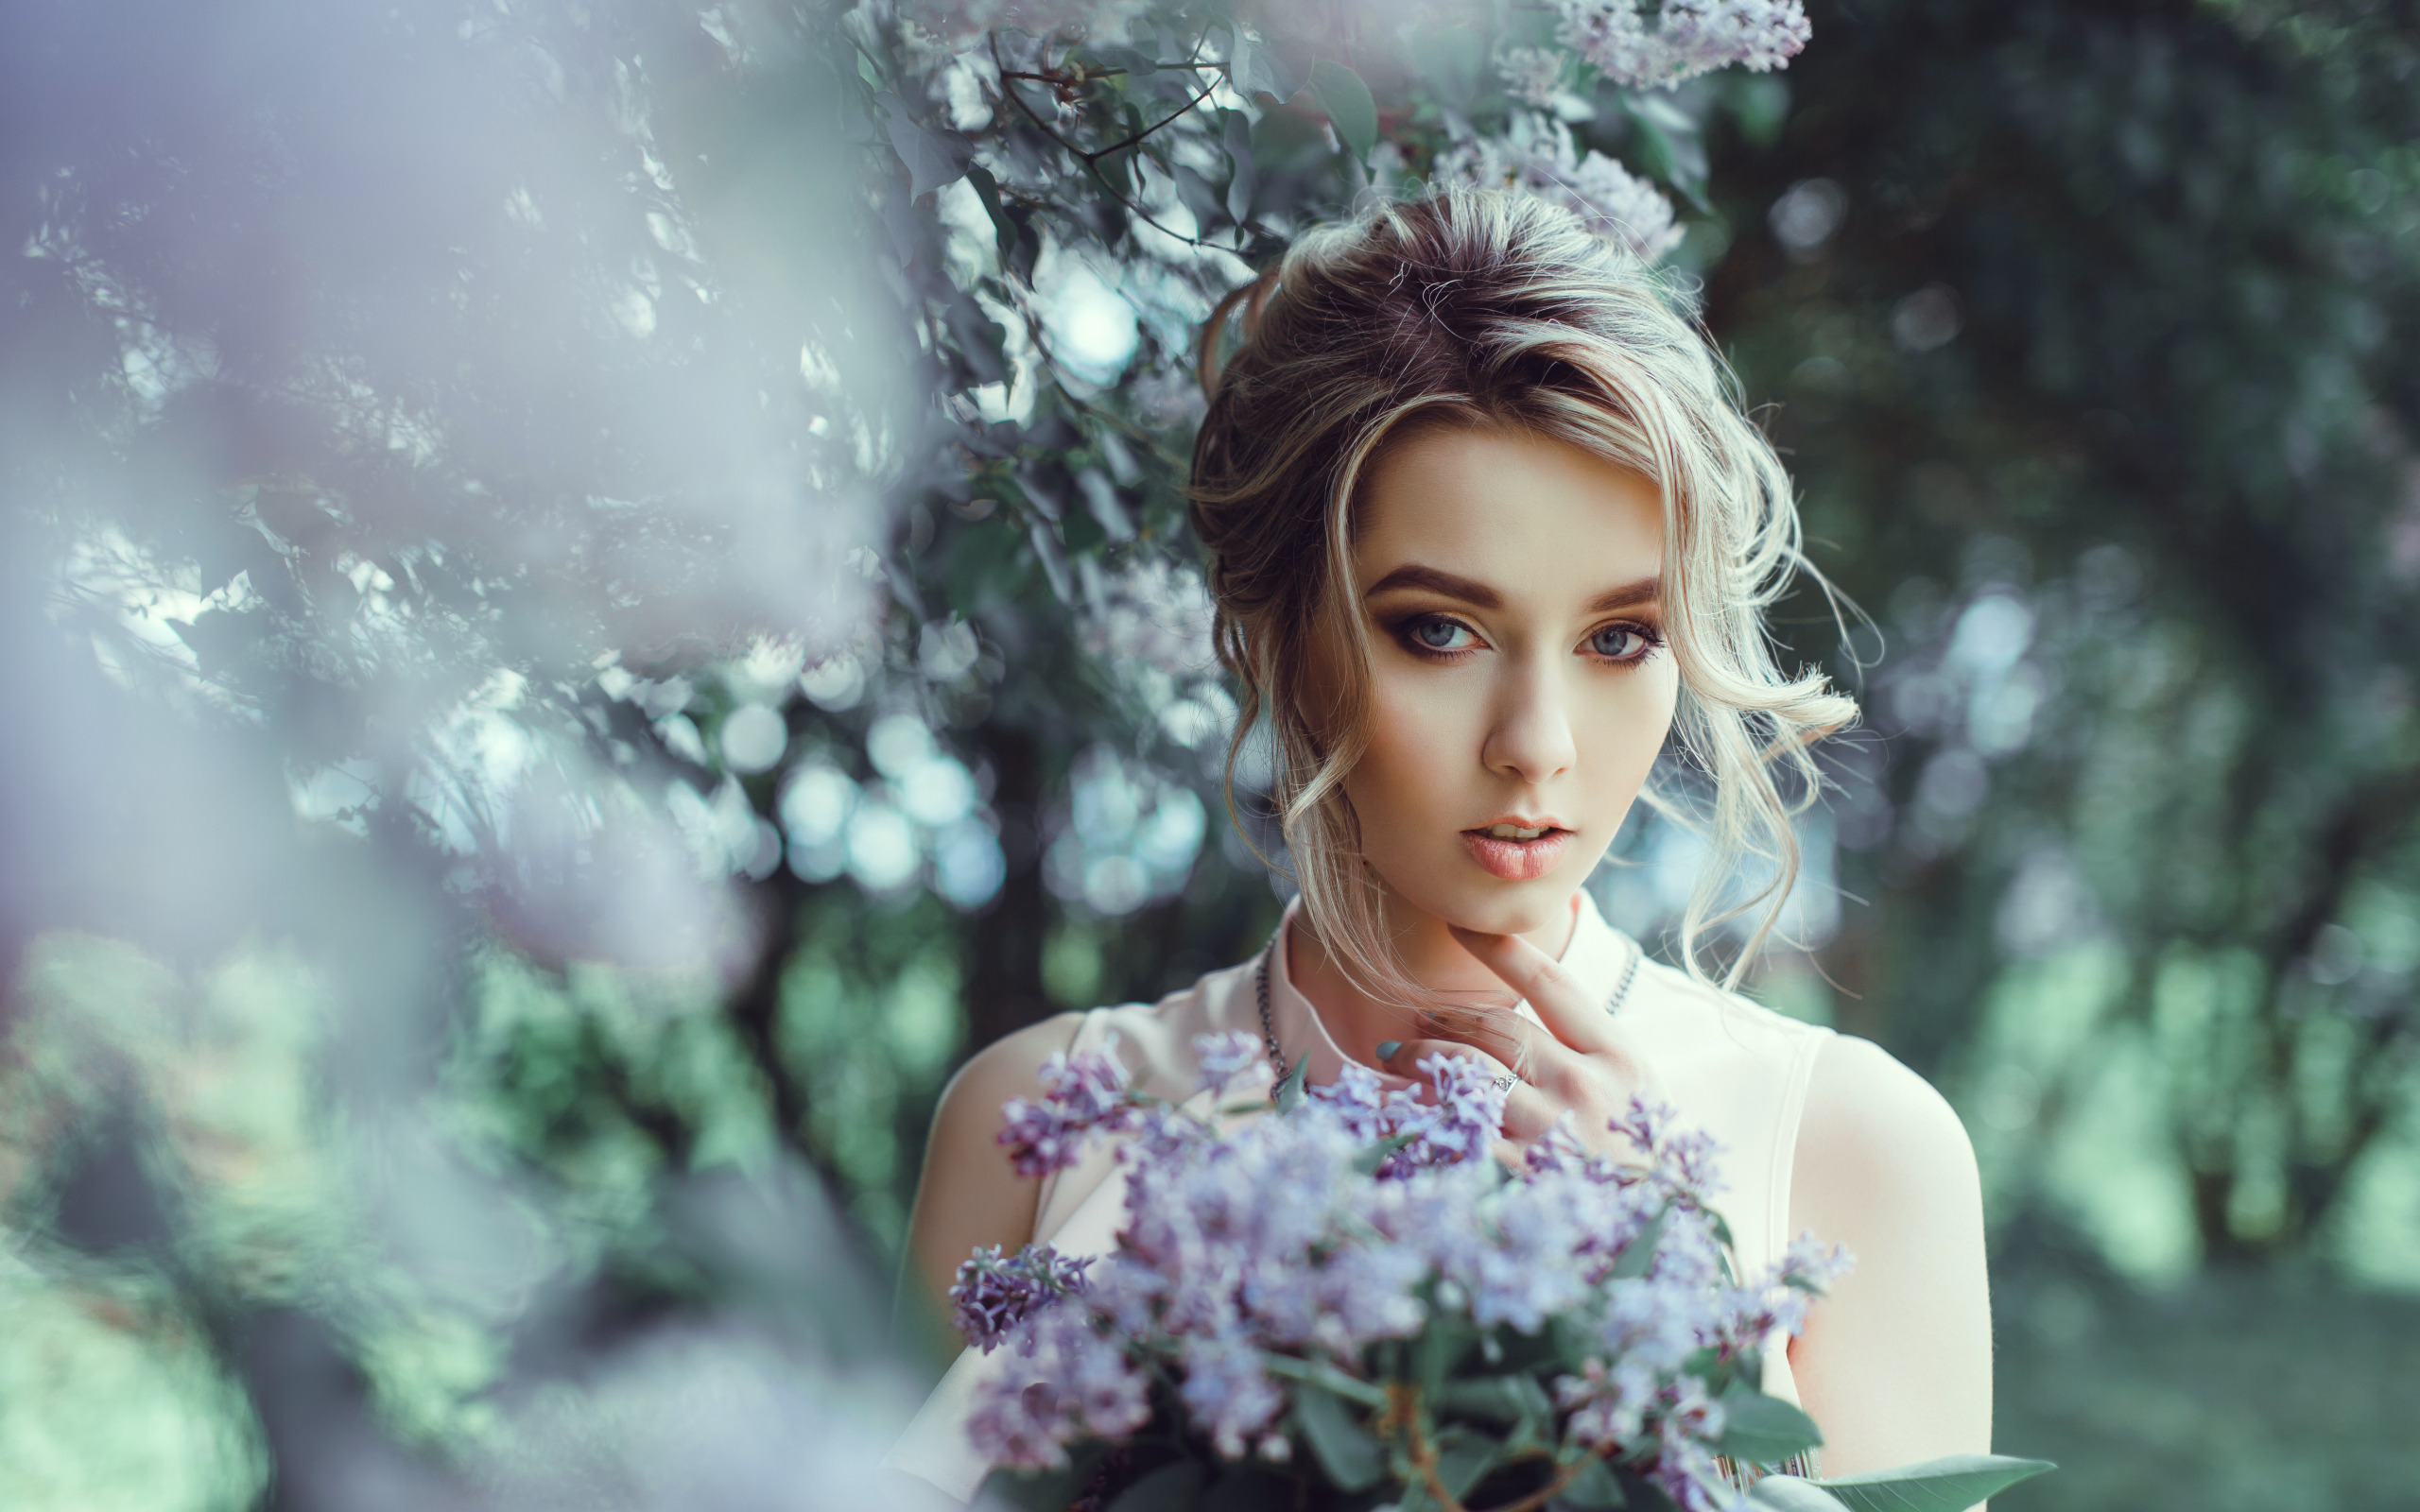 Портрет девушки с букетом цветов